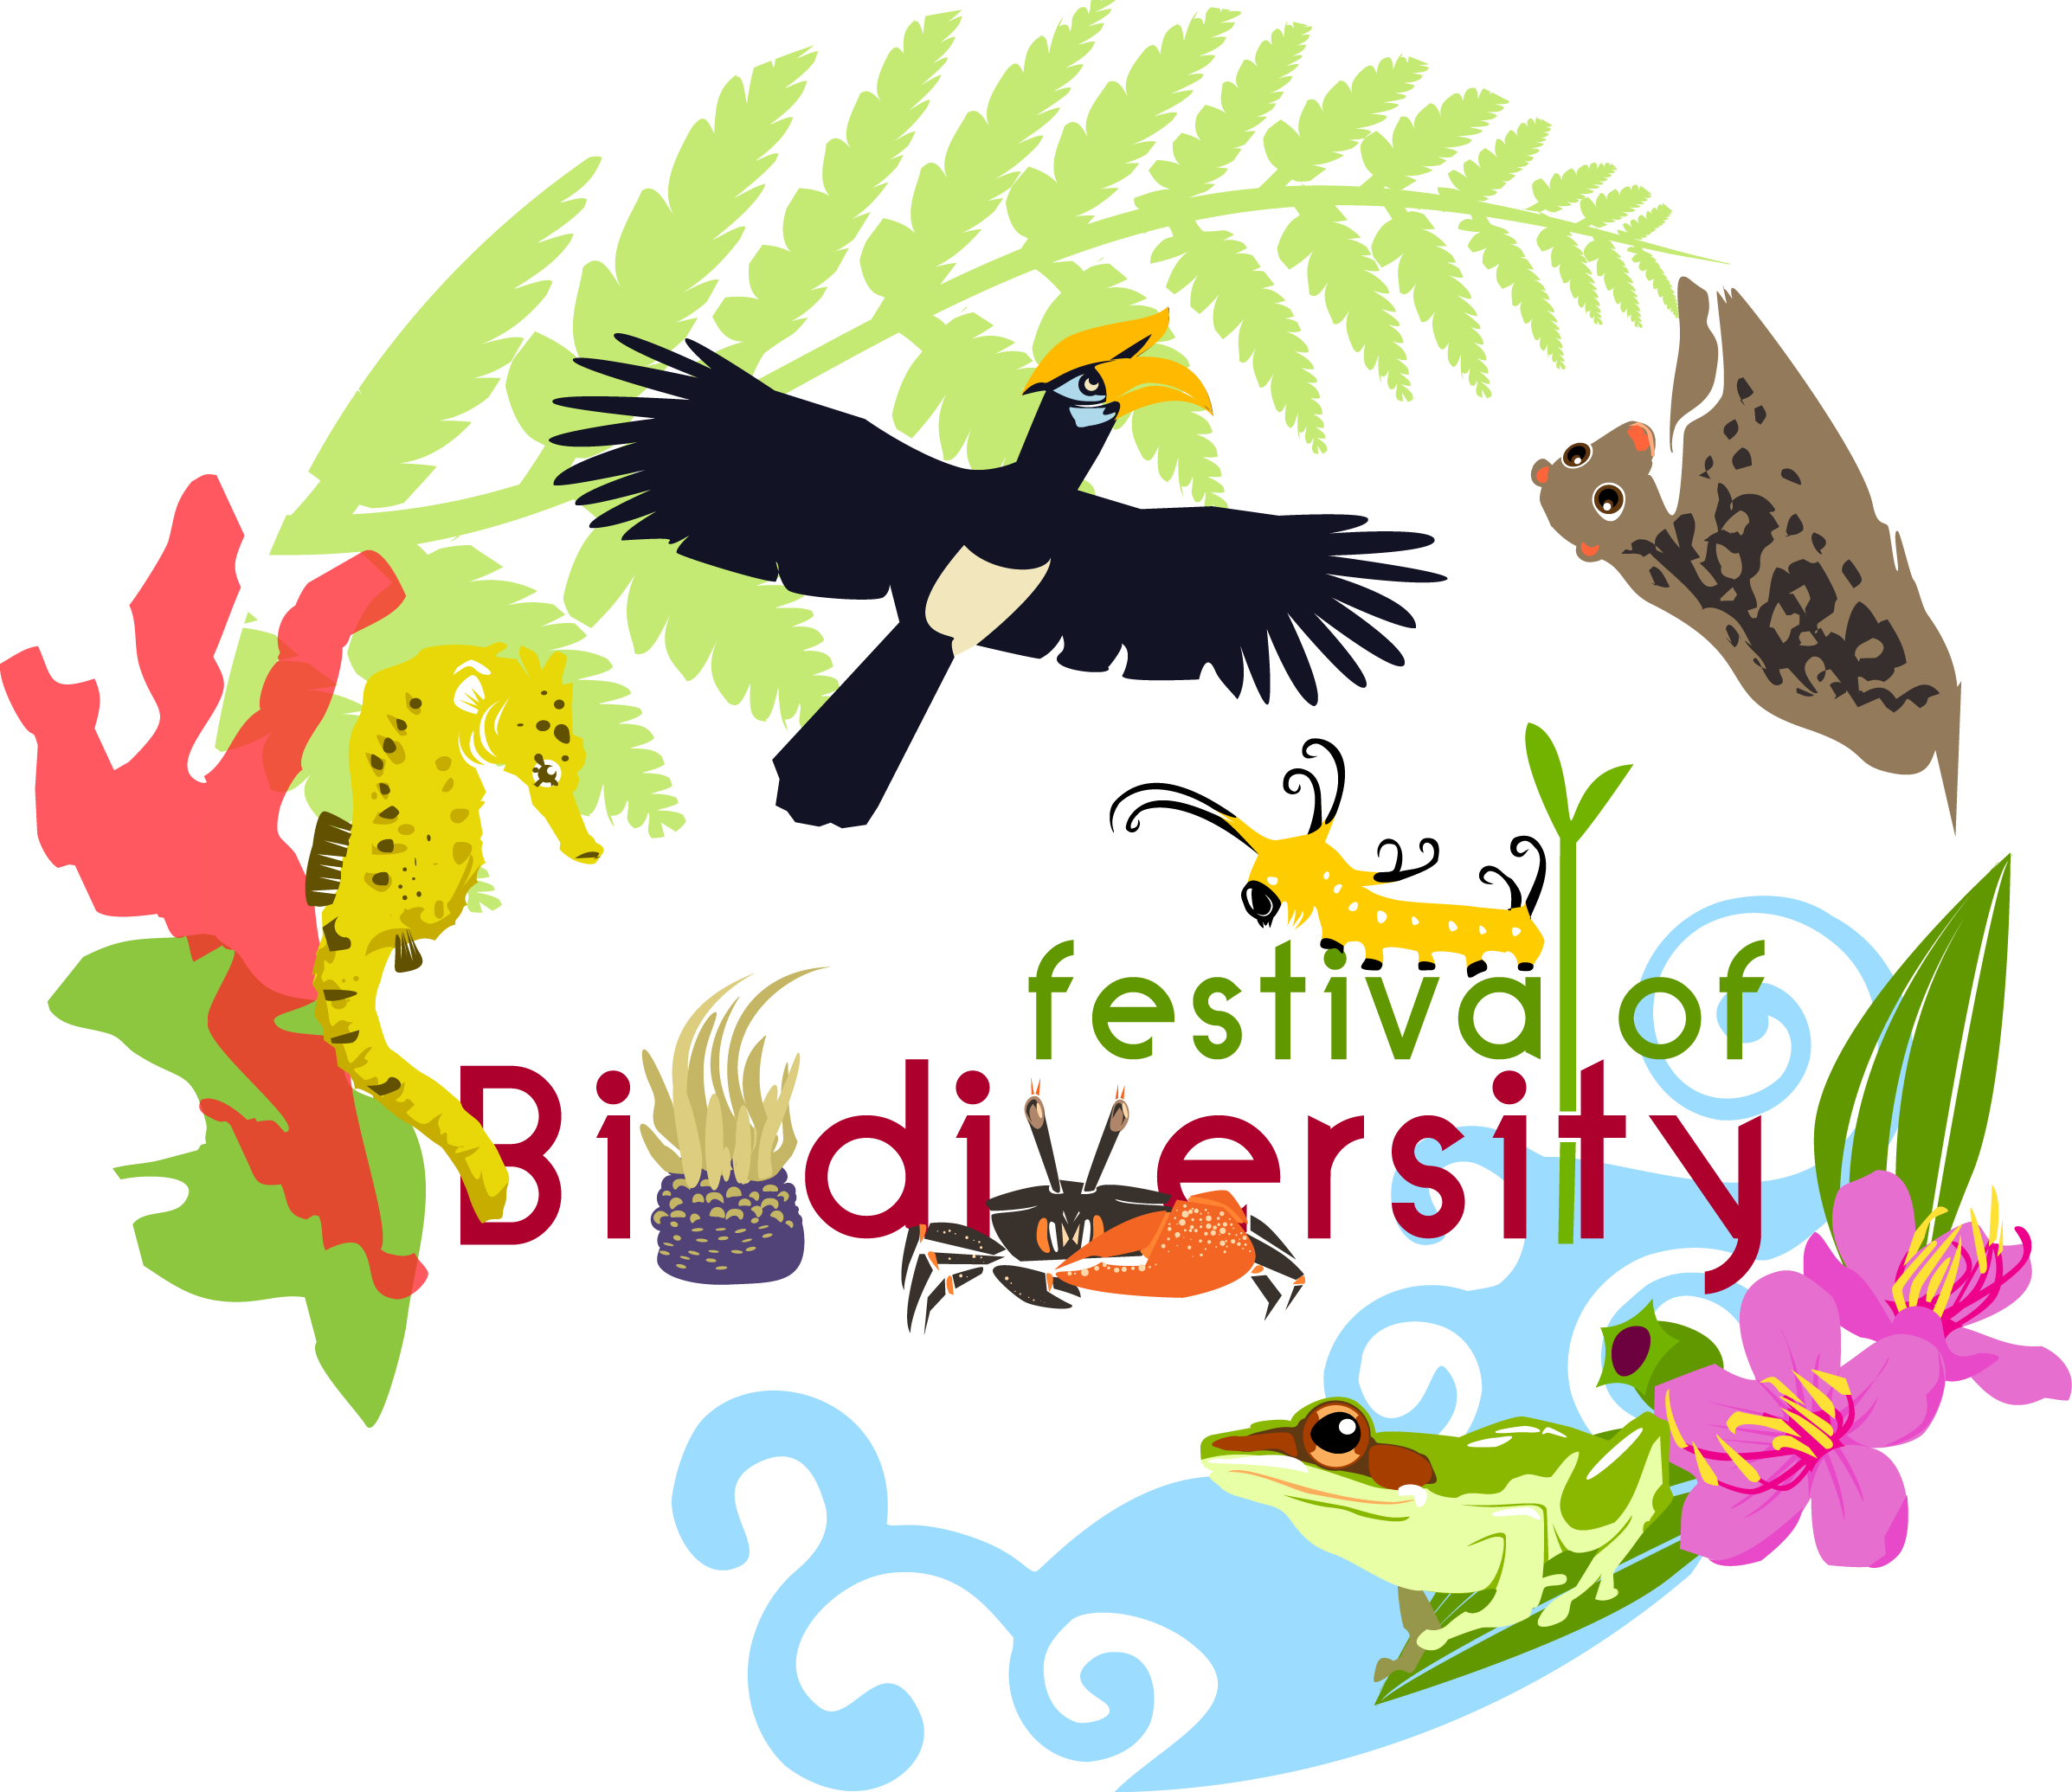 Festival Of Biodiversity - Biodiversity Posters (2394x2071)